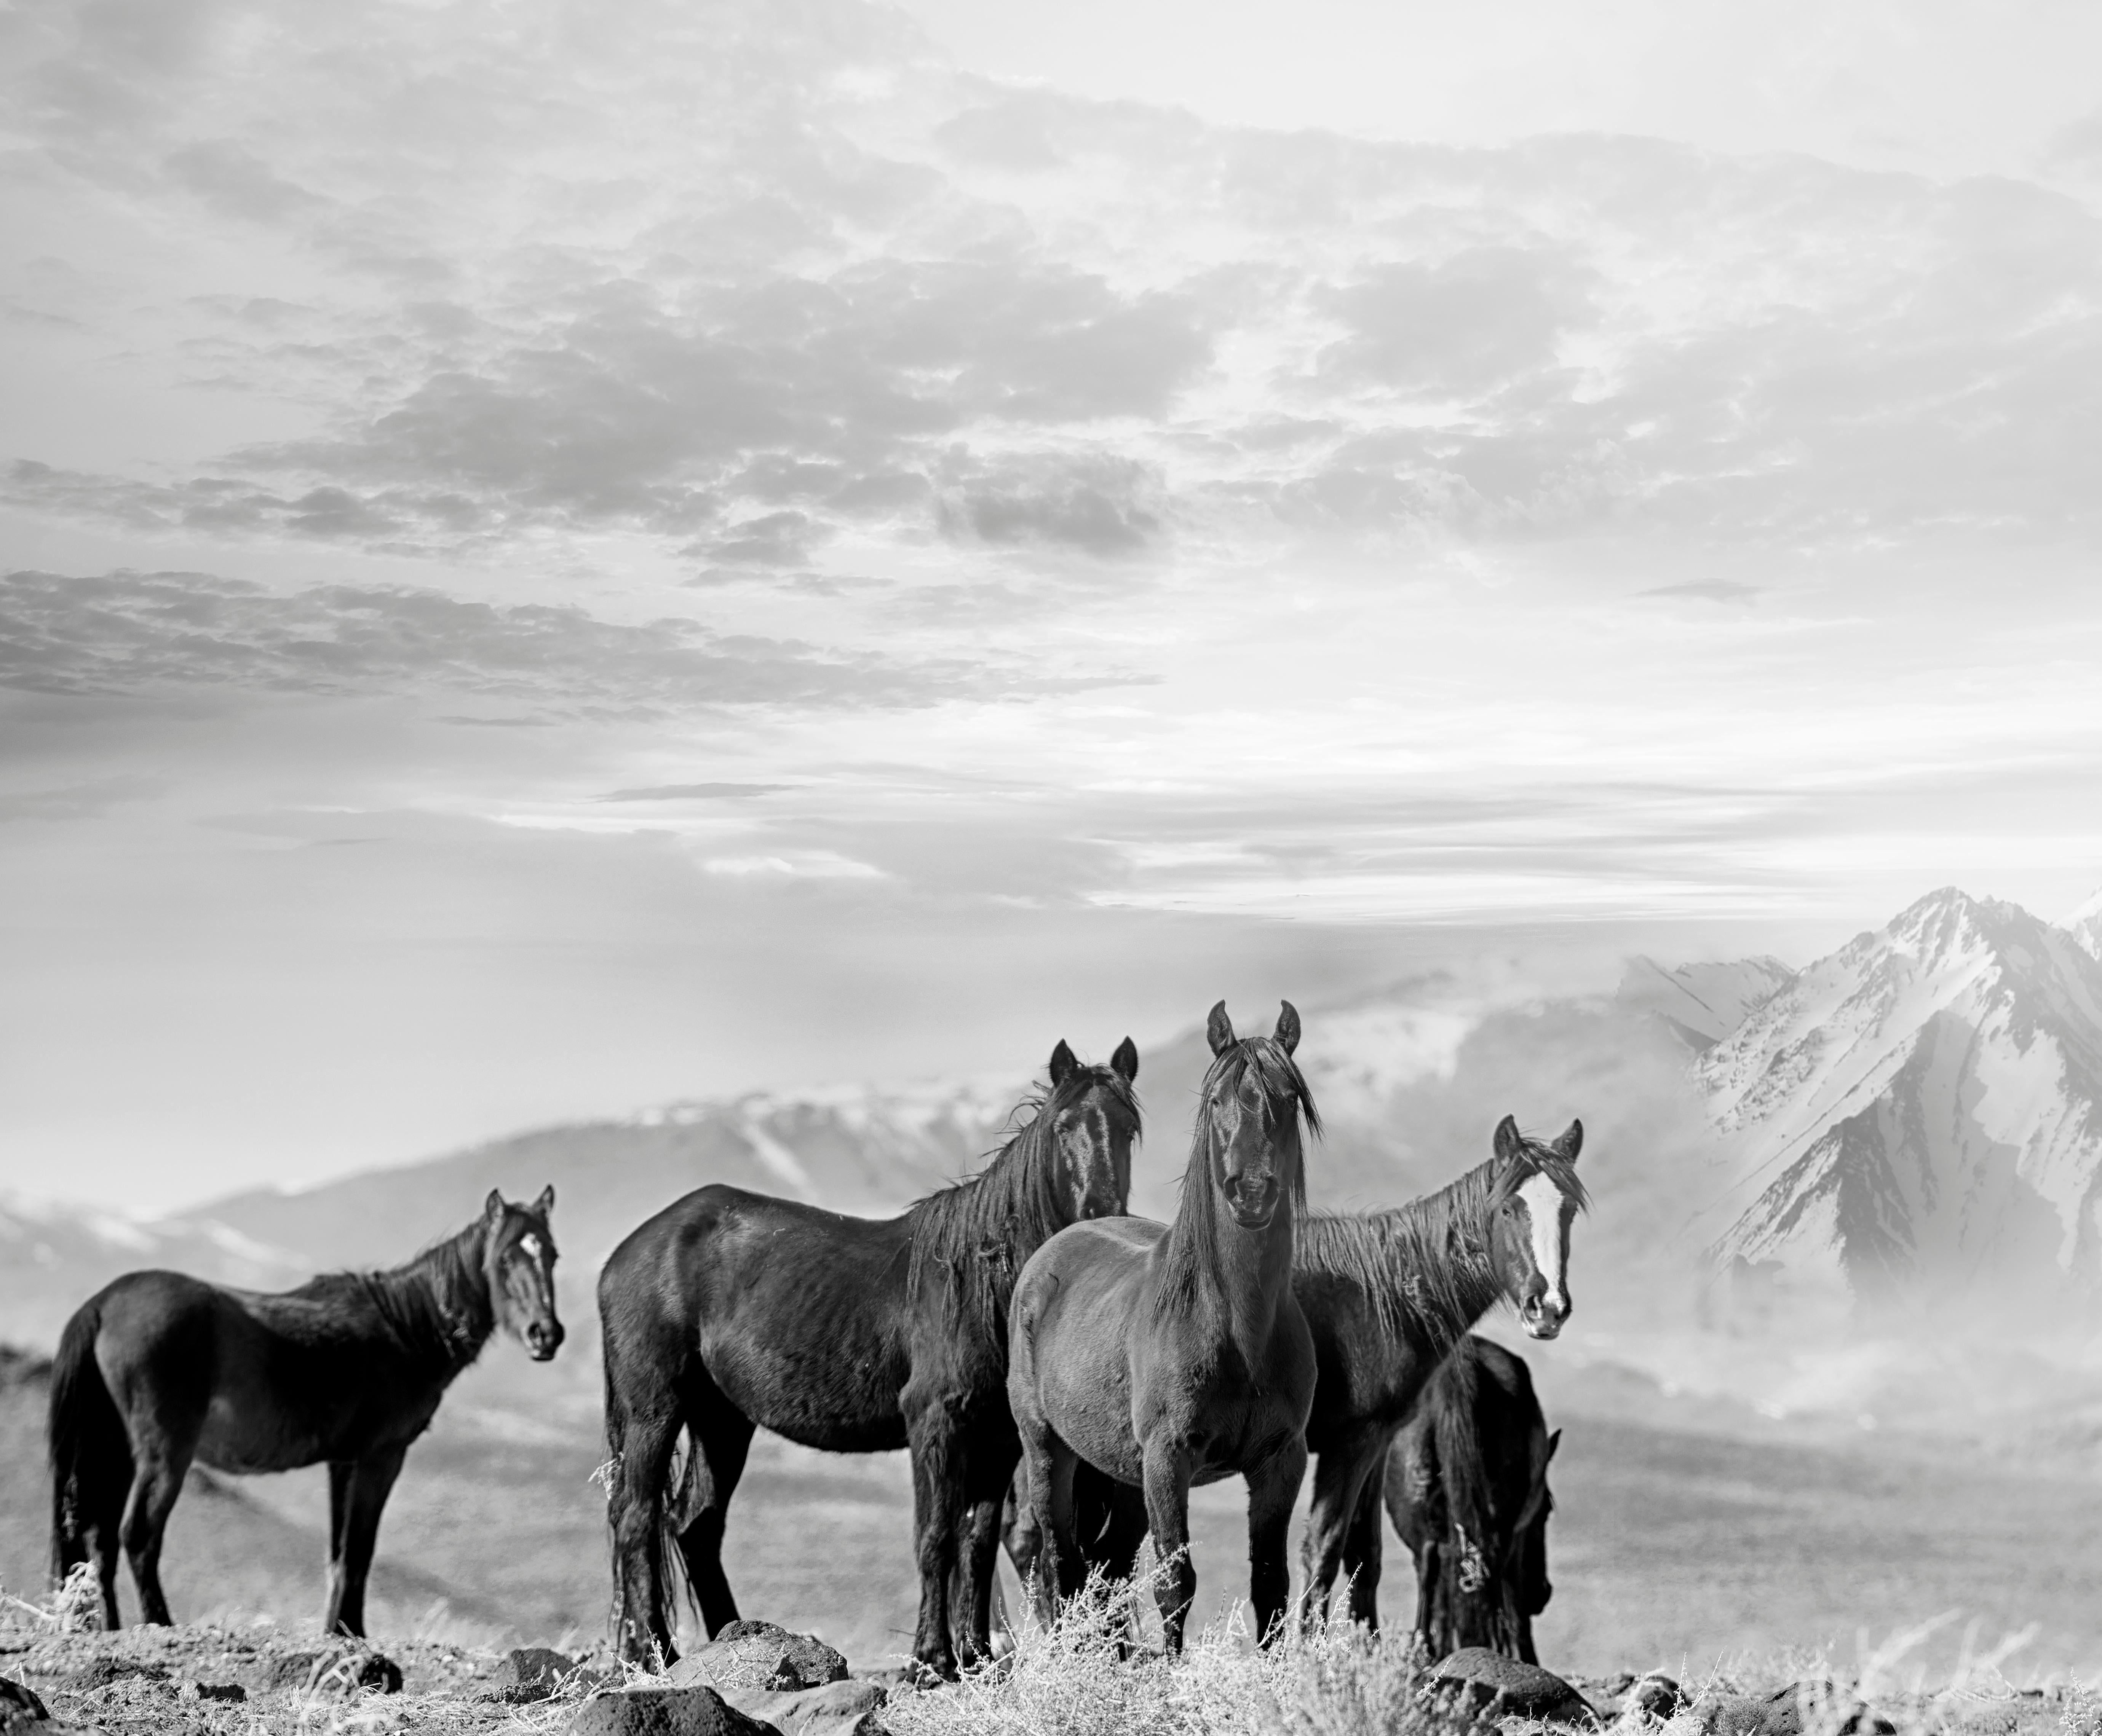 Black and White Photograph Shane Russeck - High Sierra Mustangs - 40x30 Photographie en noir et blanc de chevaux sauvages 